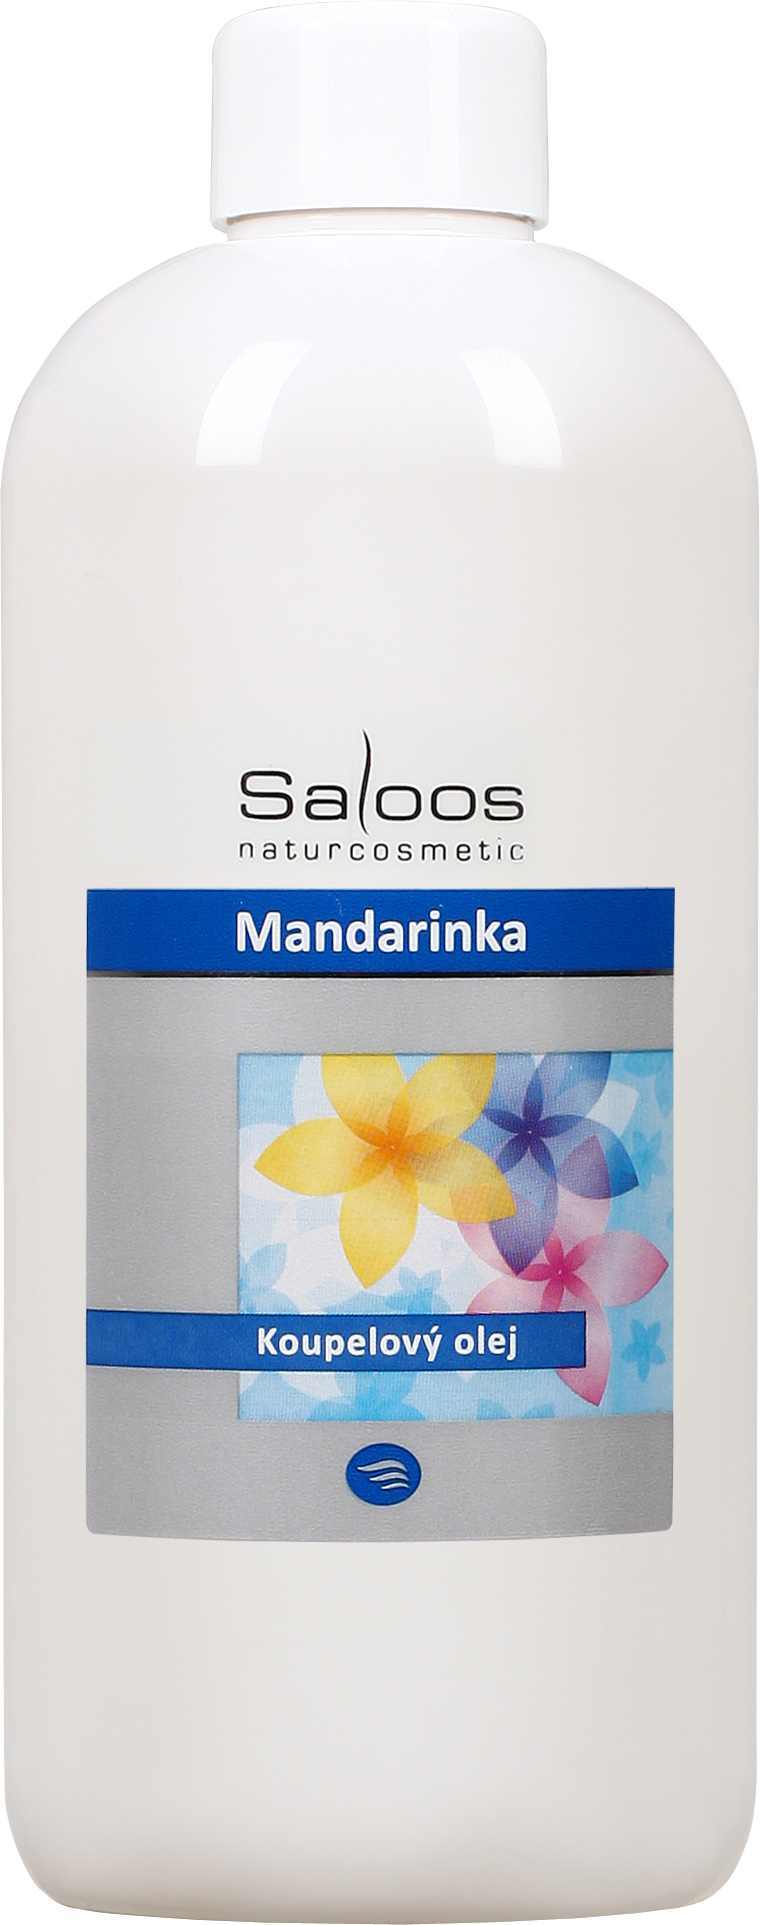 Saloos Mandarinka - koupelový olej Balení: 1000 ml